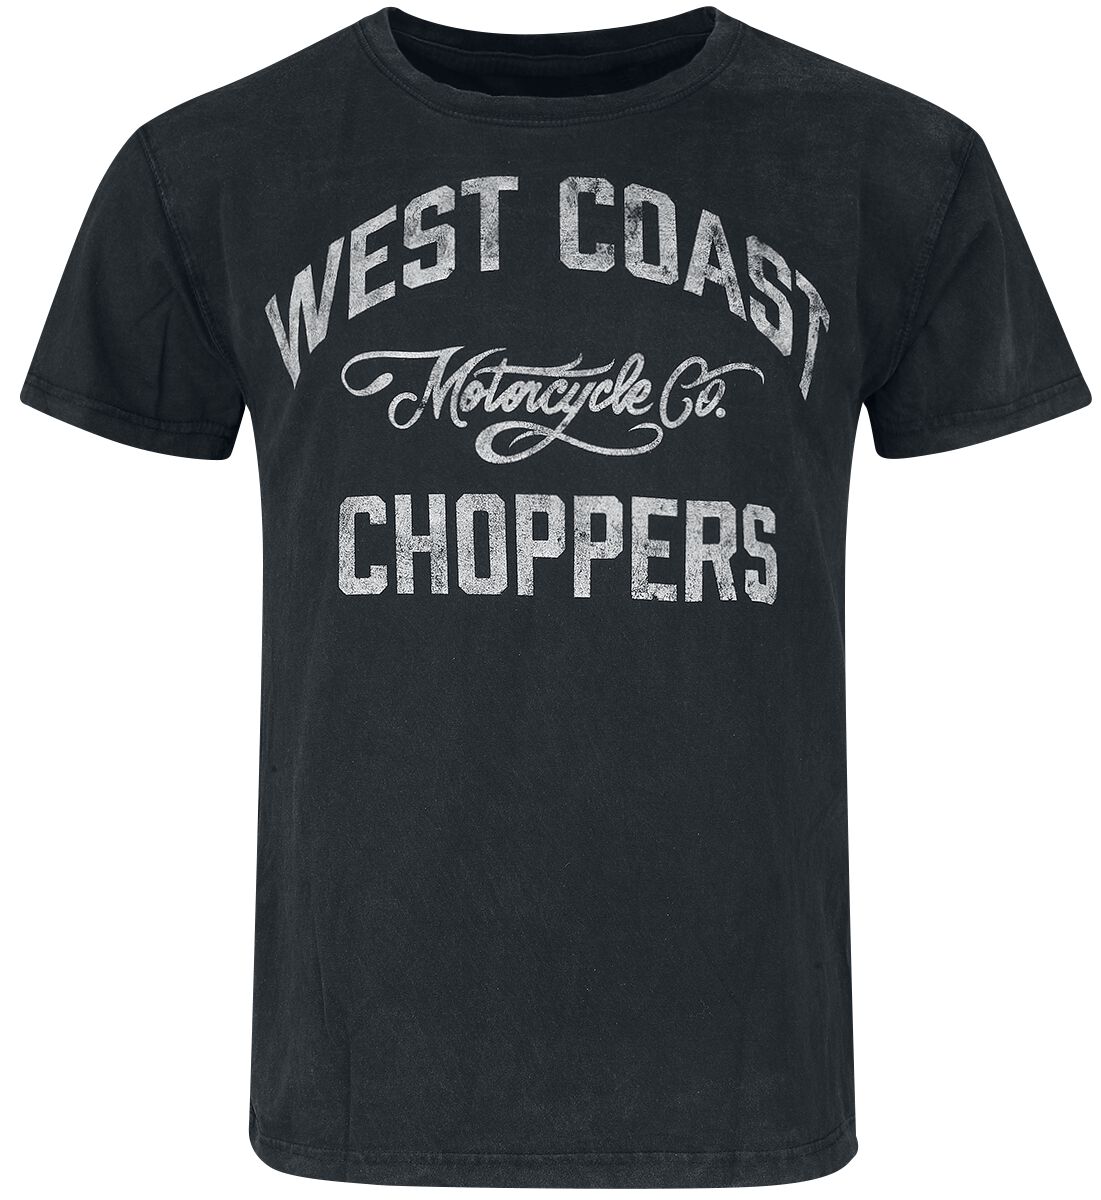 West Coast Choppers T-Shirt - Motorcycle Co. - S bis 3XL - für Männer - Größe XL - schwarz